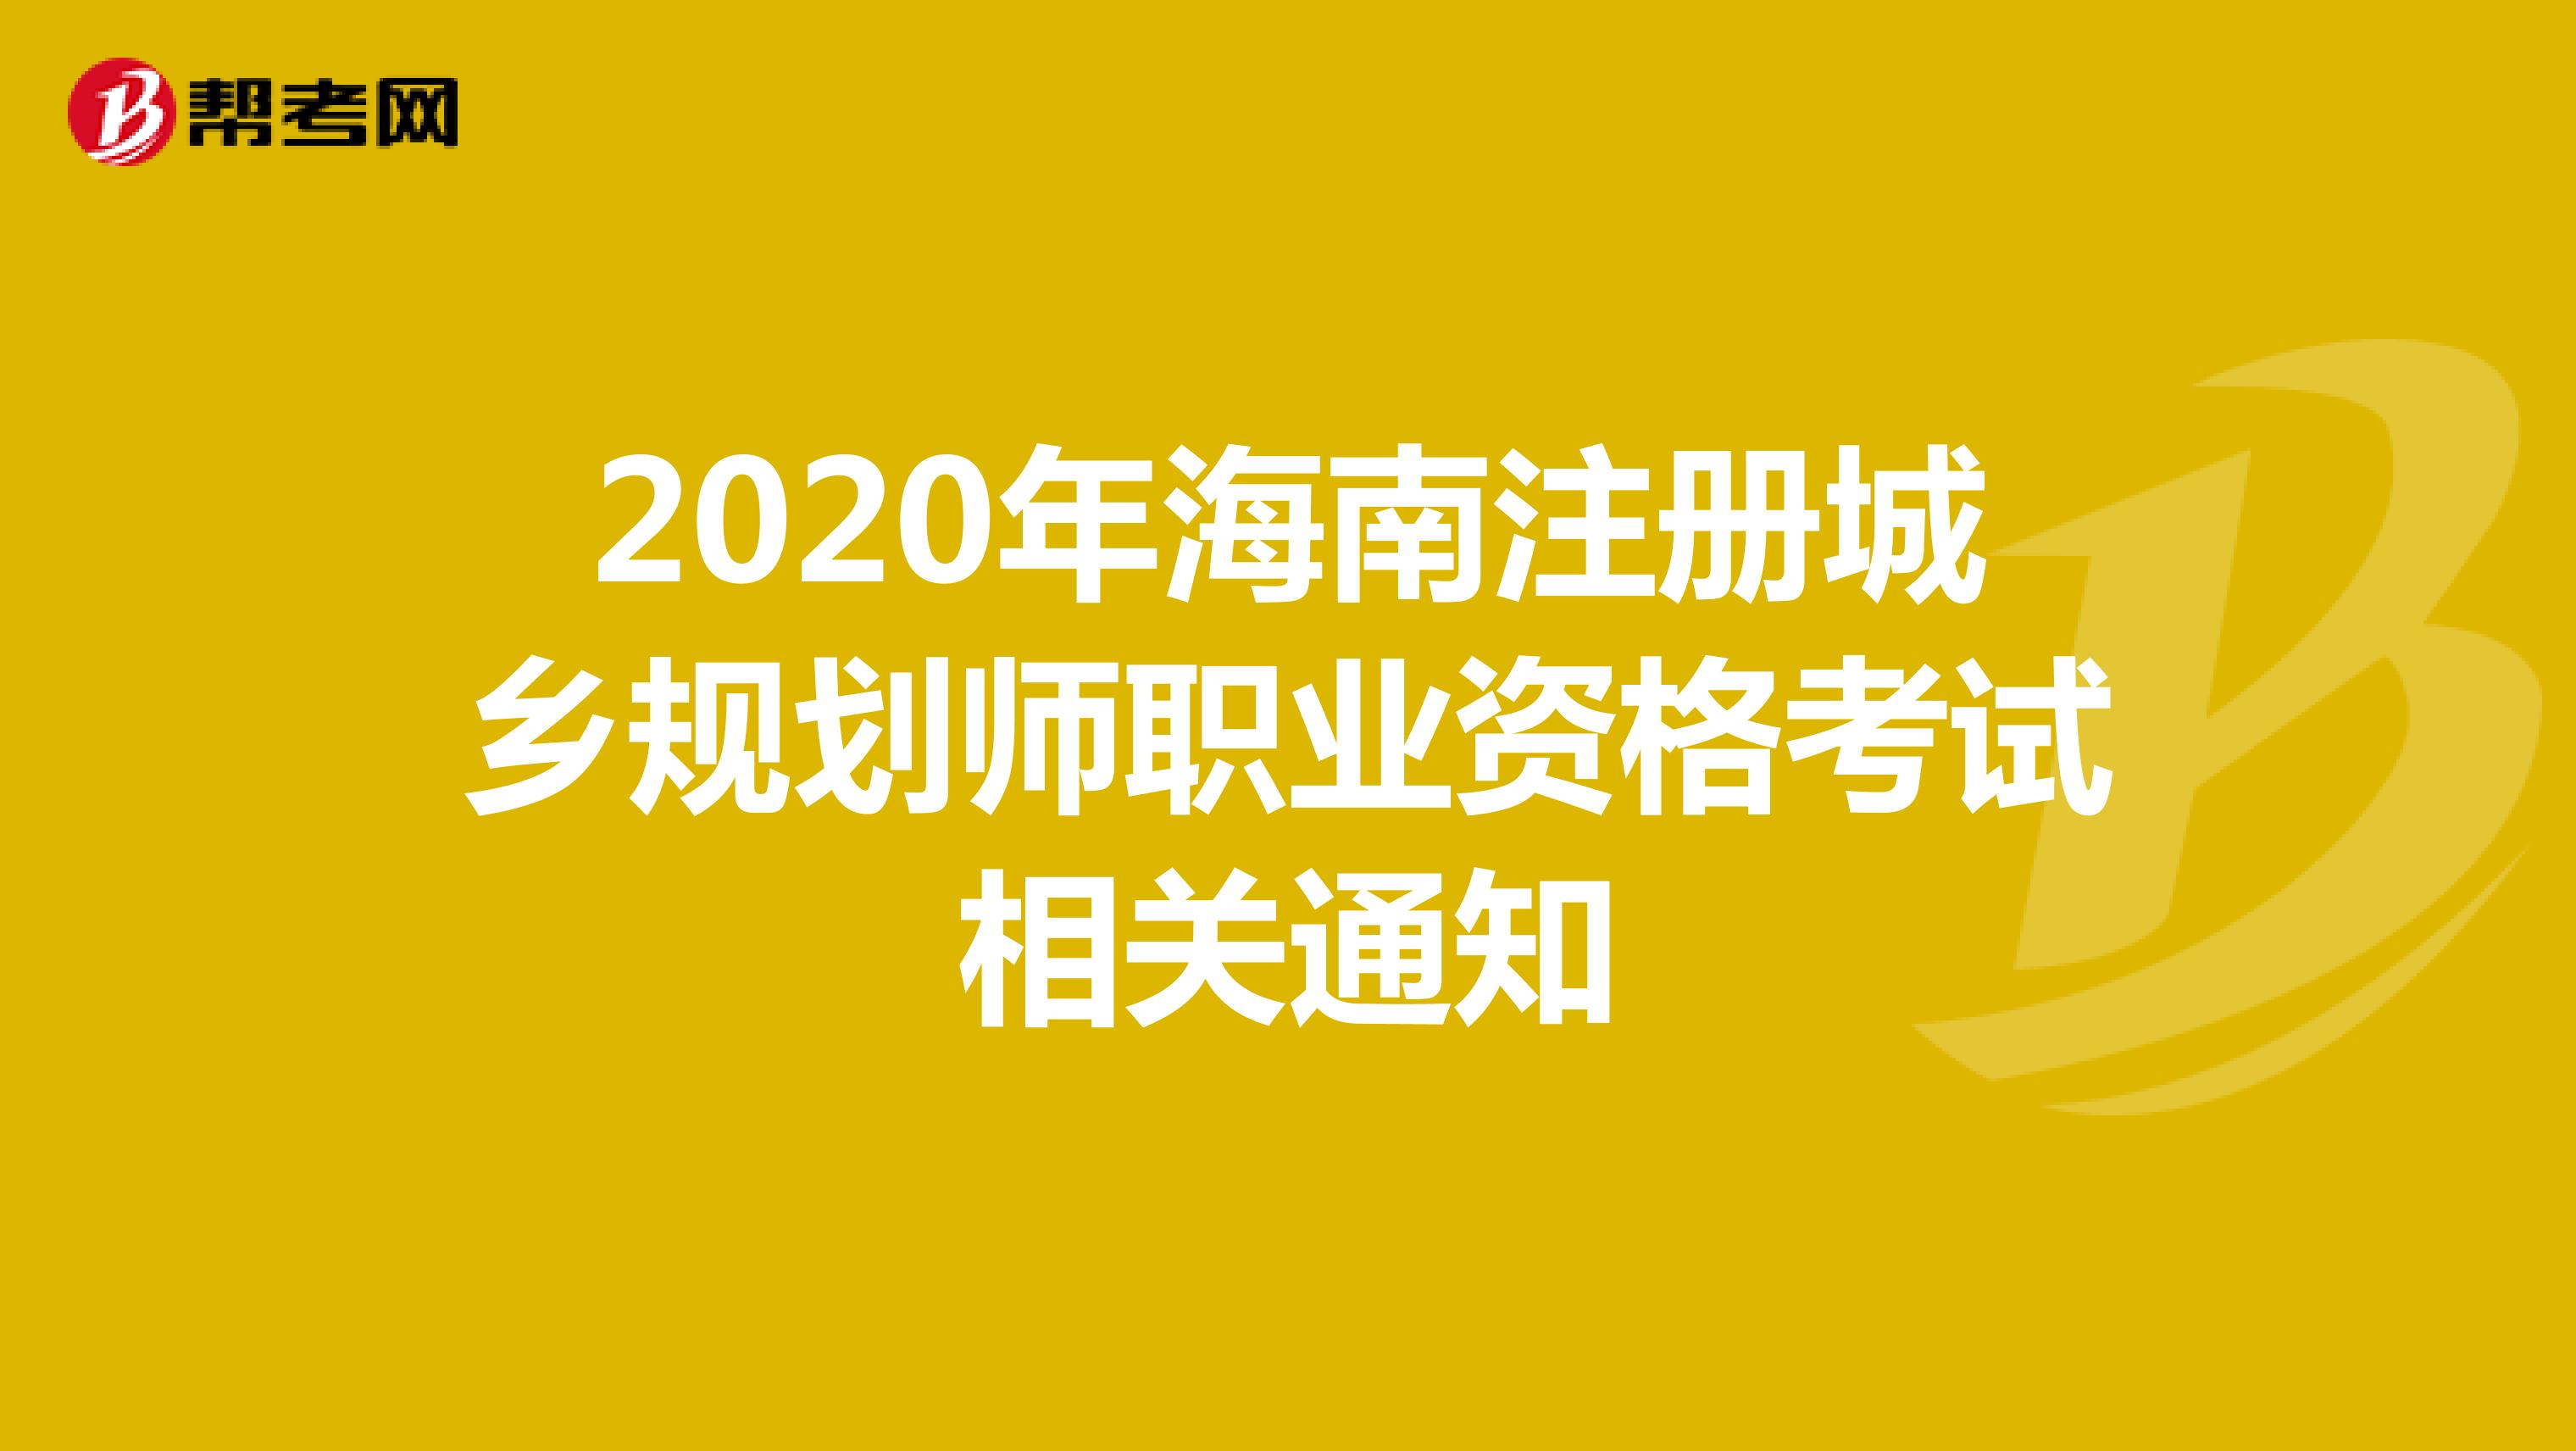 2020年海南注册城乡规划师职业资格考试相关通知